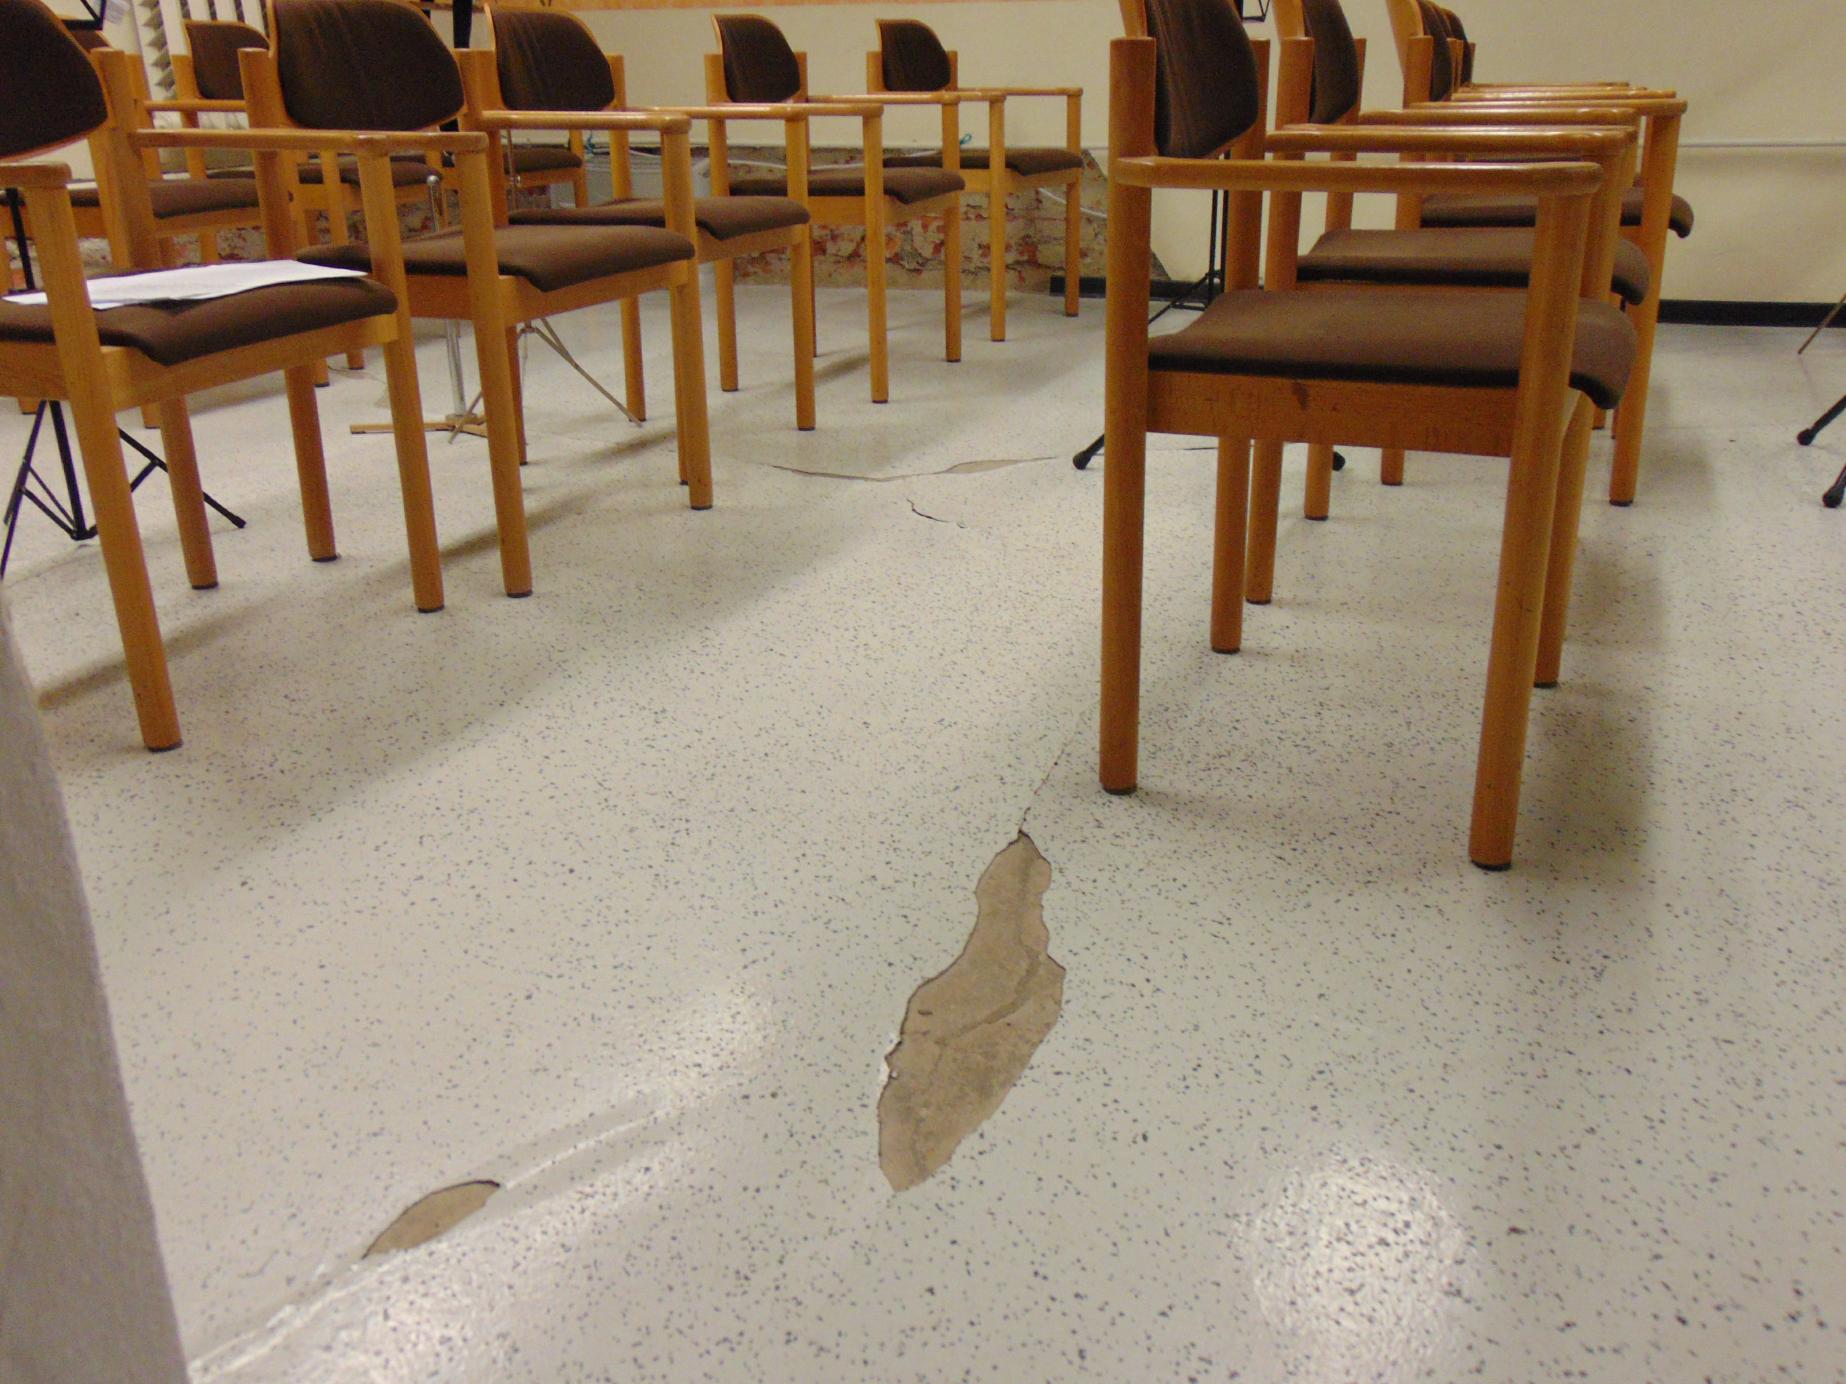 Das Bild zeigt einen beschädigten Boden in einem Innenraum mit Stuhlreihen aus gepolsterten Holzstühlen.